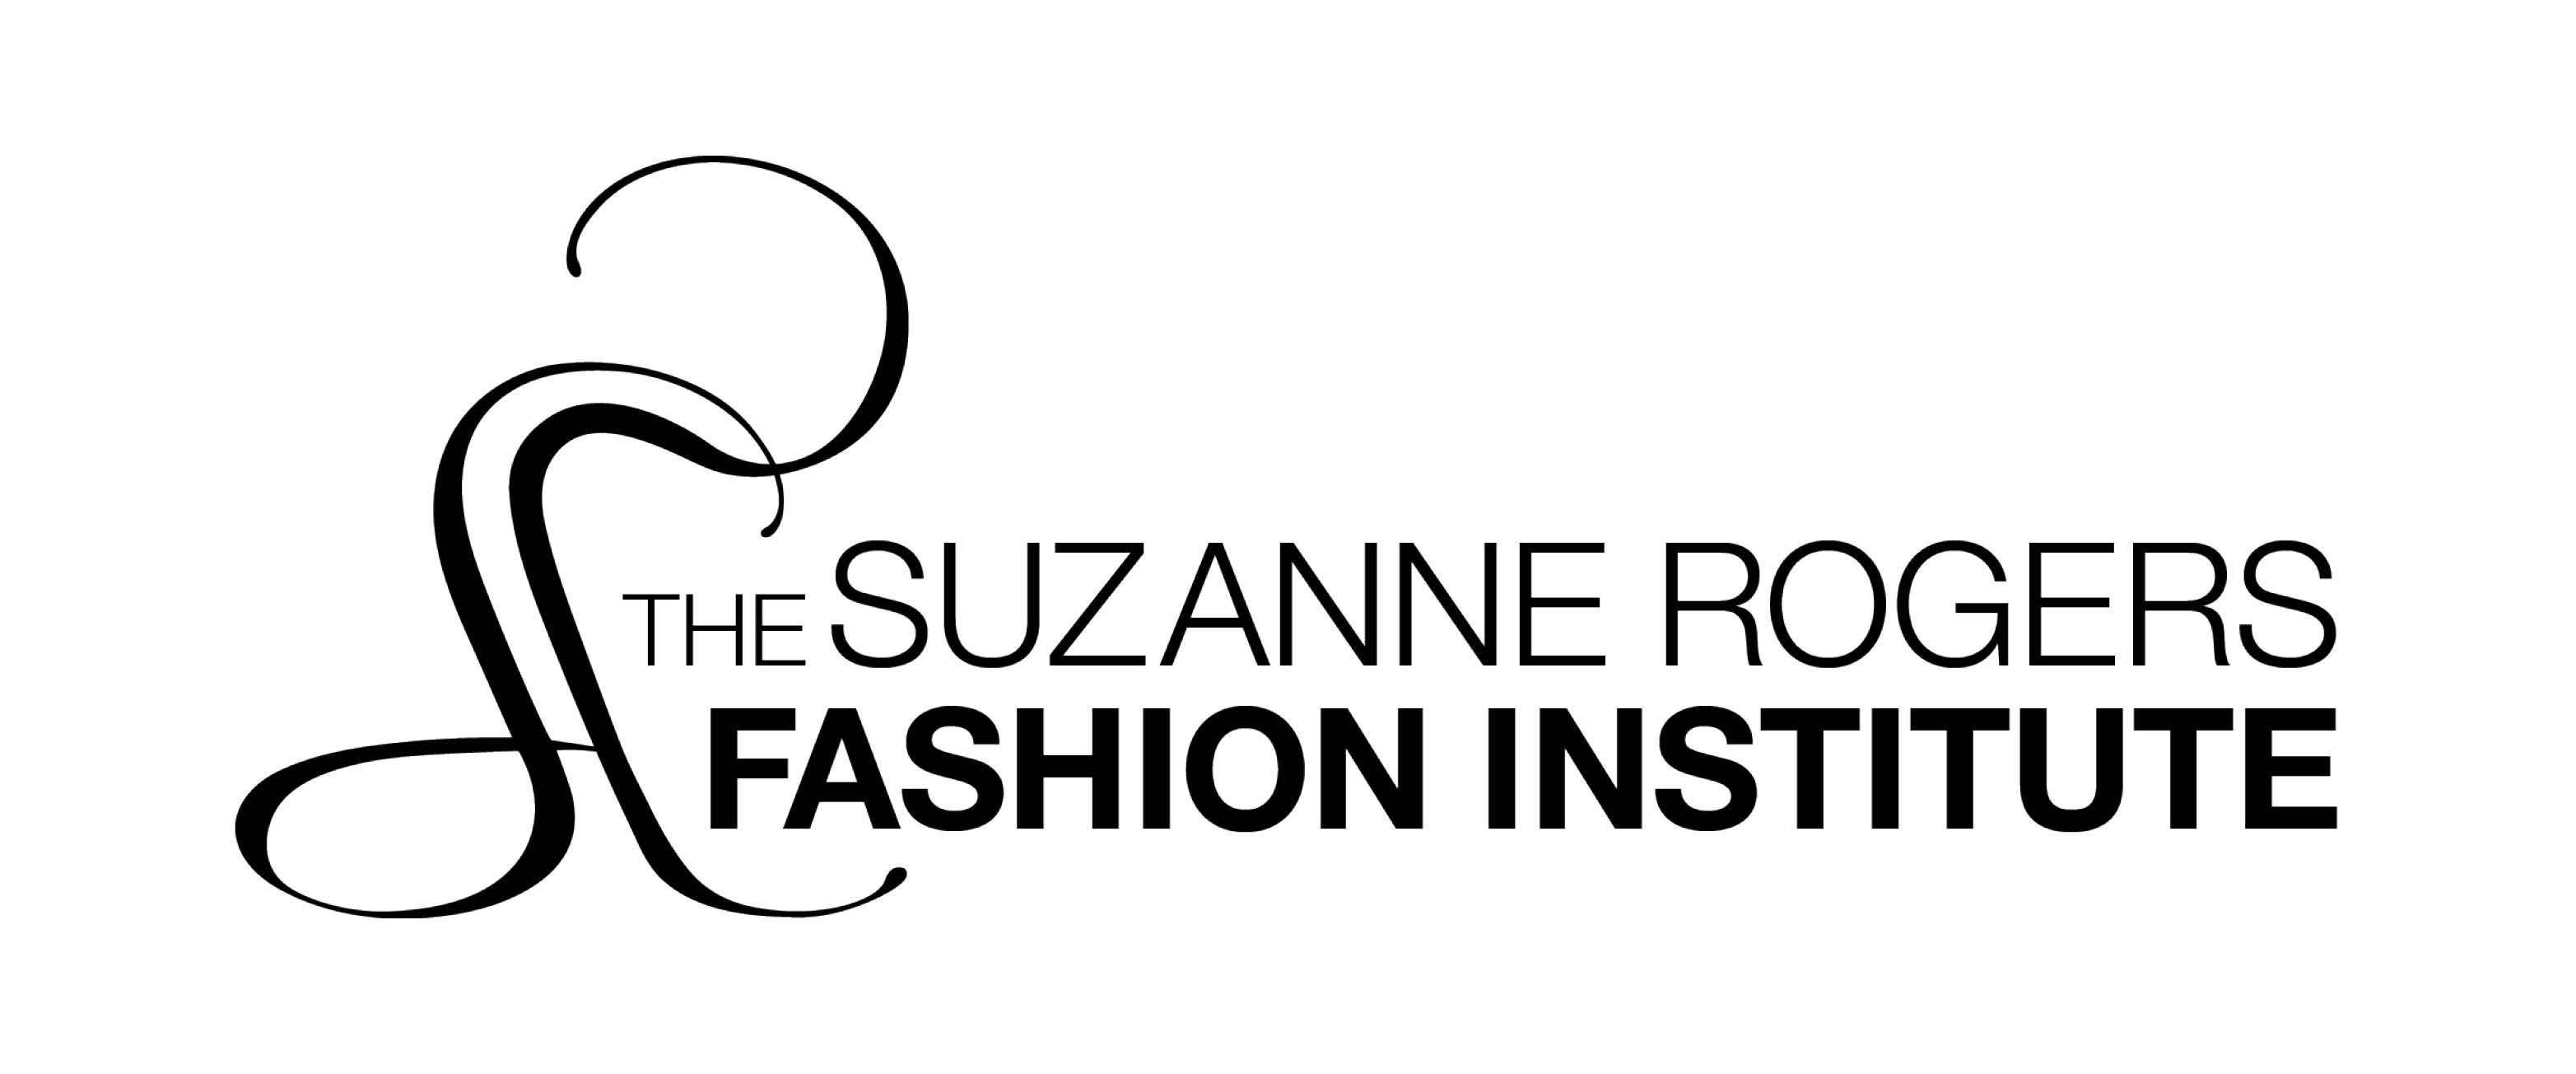 Suzanne Rogers Fashion Institute